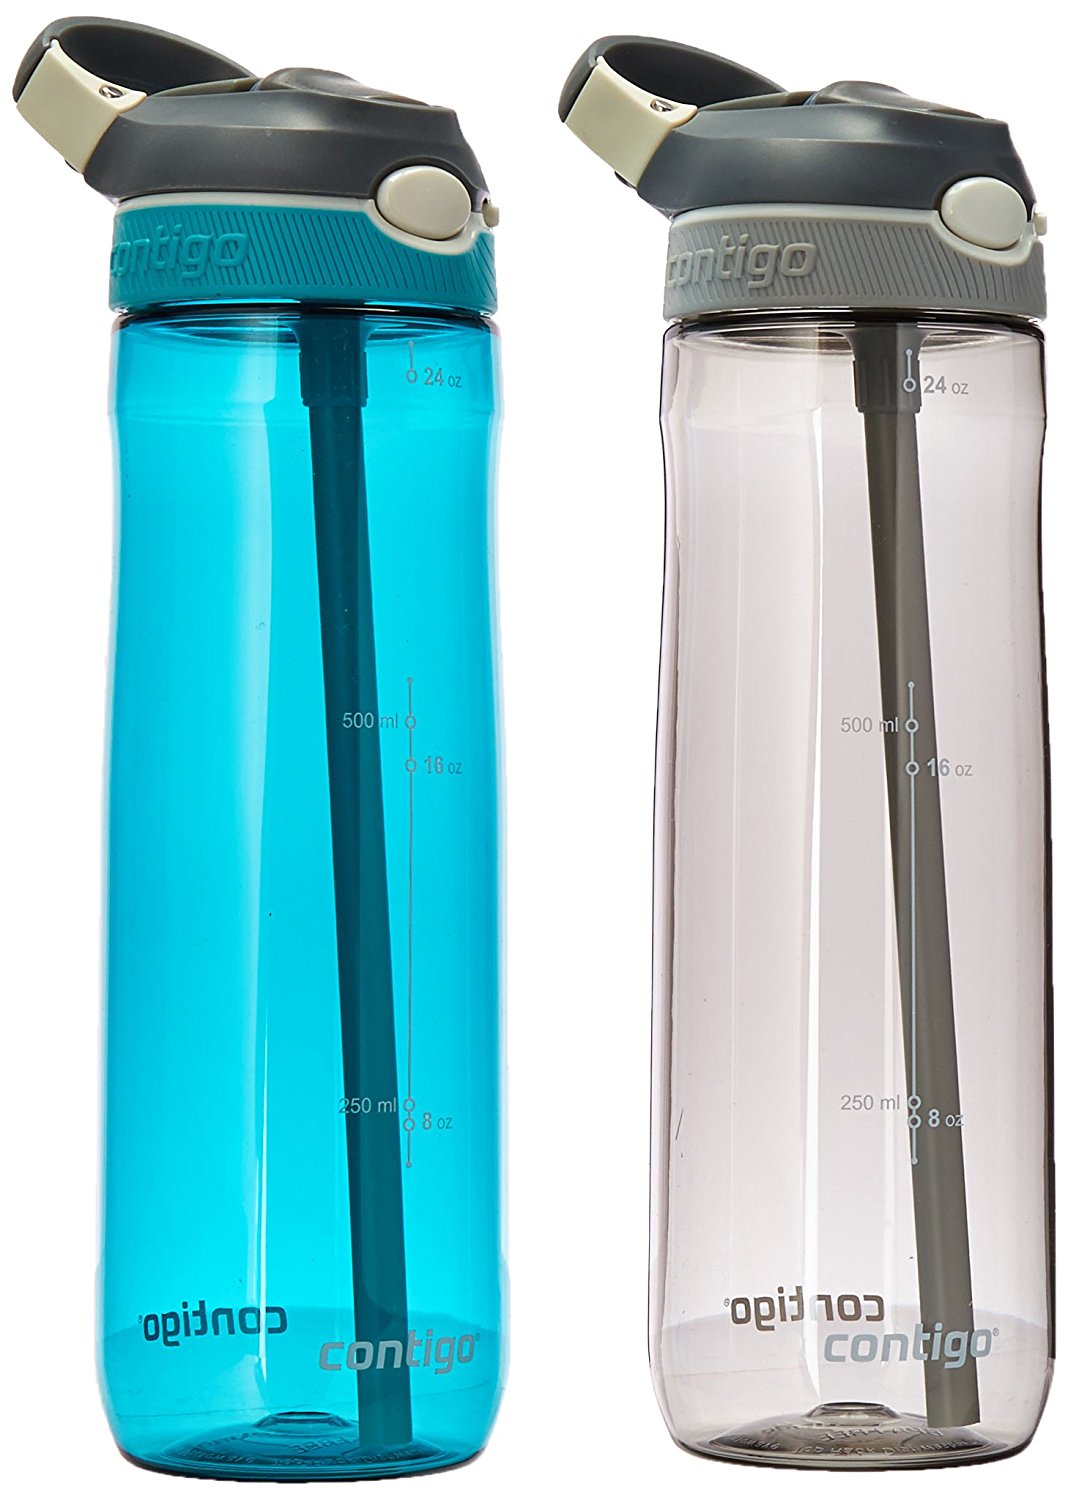 Contigo Auto Spout Ashland Water Bottle, 24 oz 2-Pack – Just $12.99!